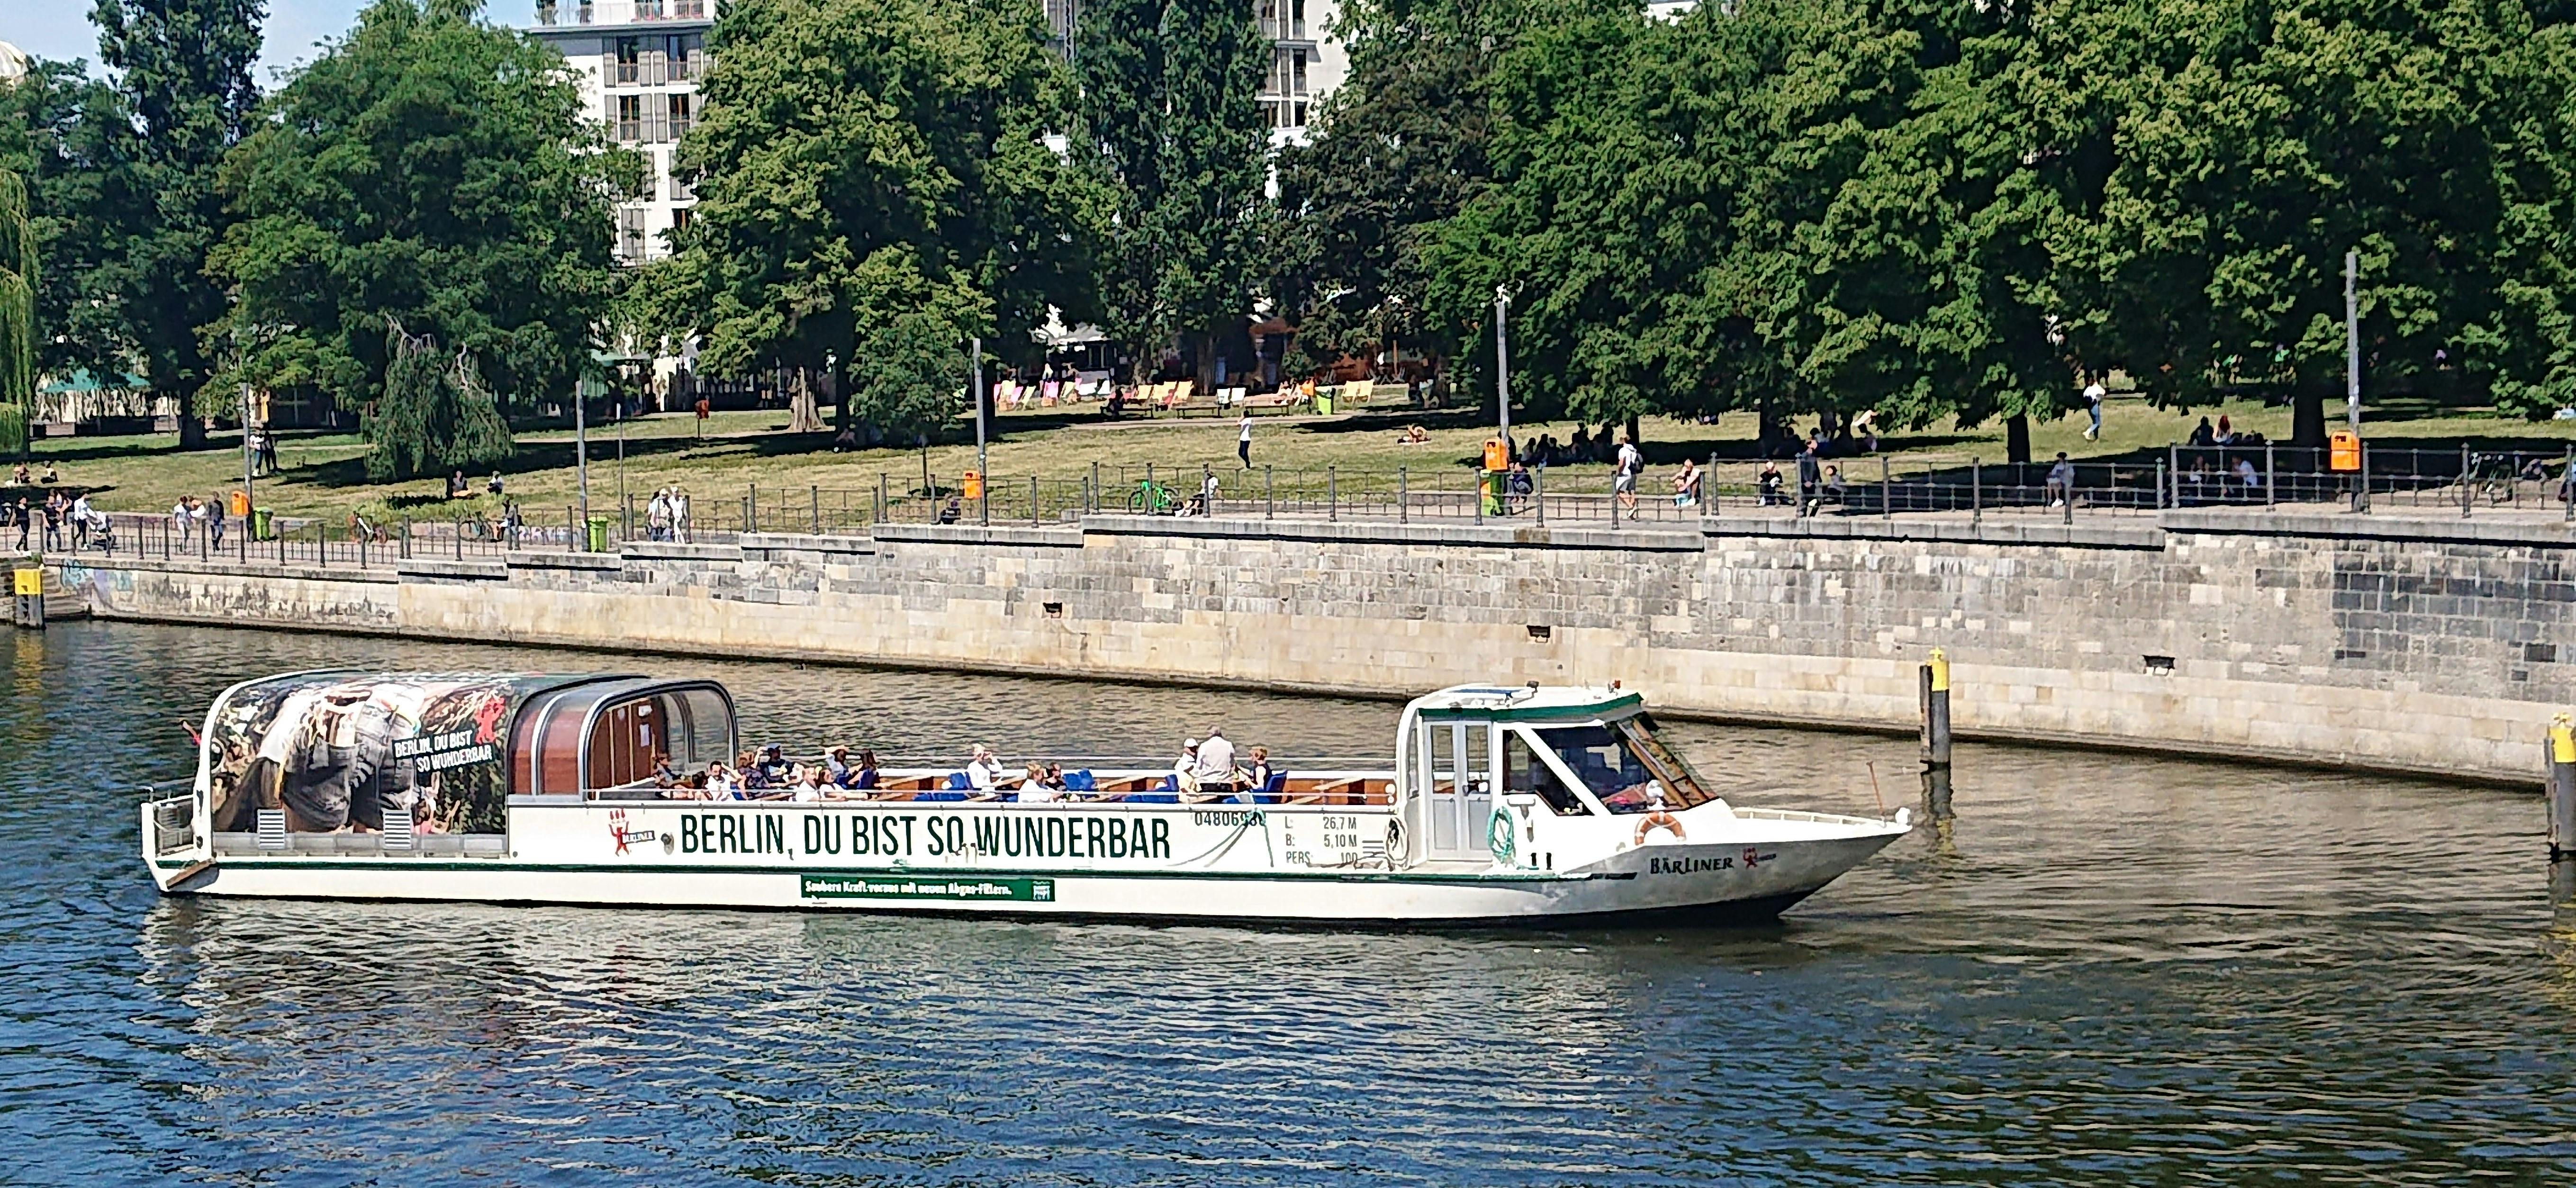 Spree-floden på bådtur gennem centrum af Berlin